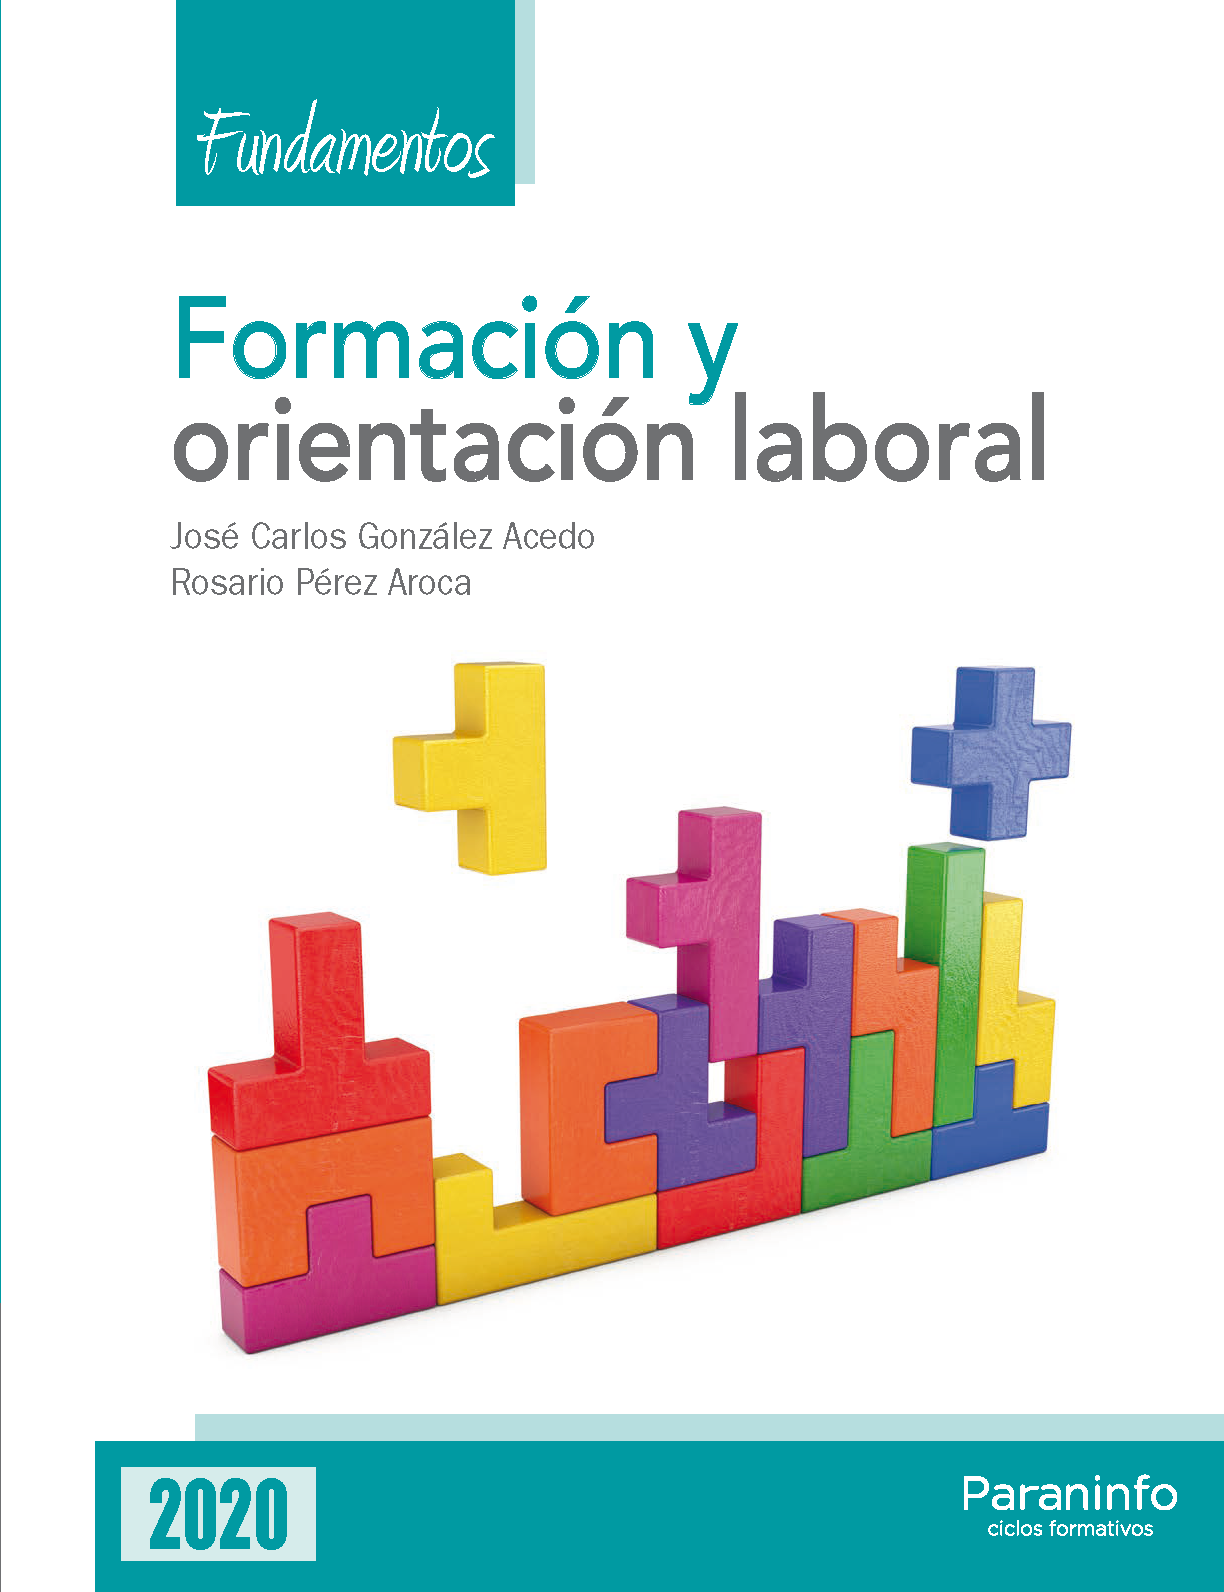 Formación y orientación laboral. Fundamentos Edición 2020